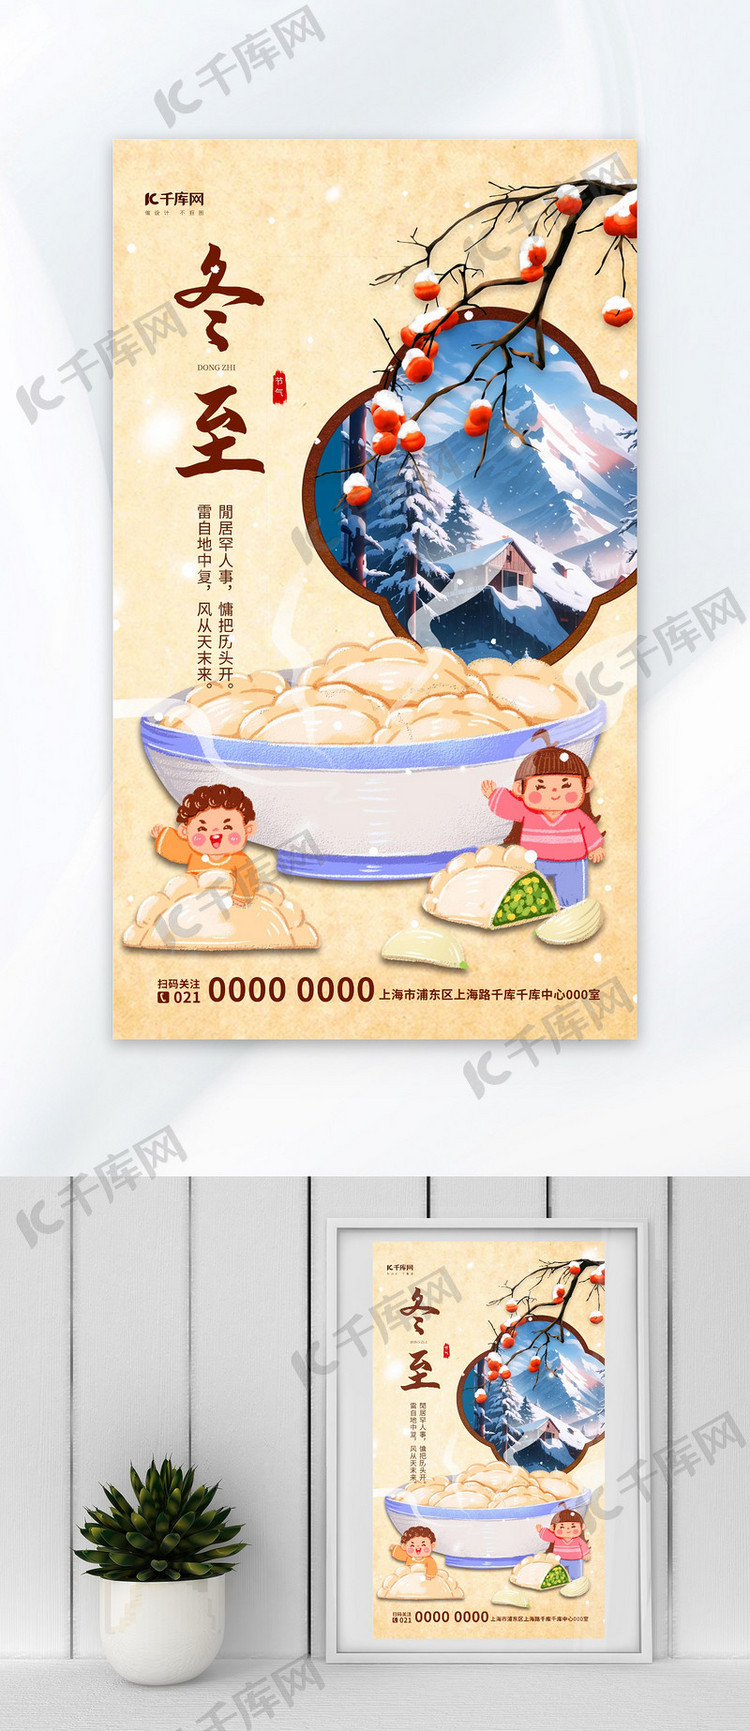 冬至节气水饺插画海报